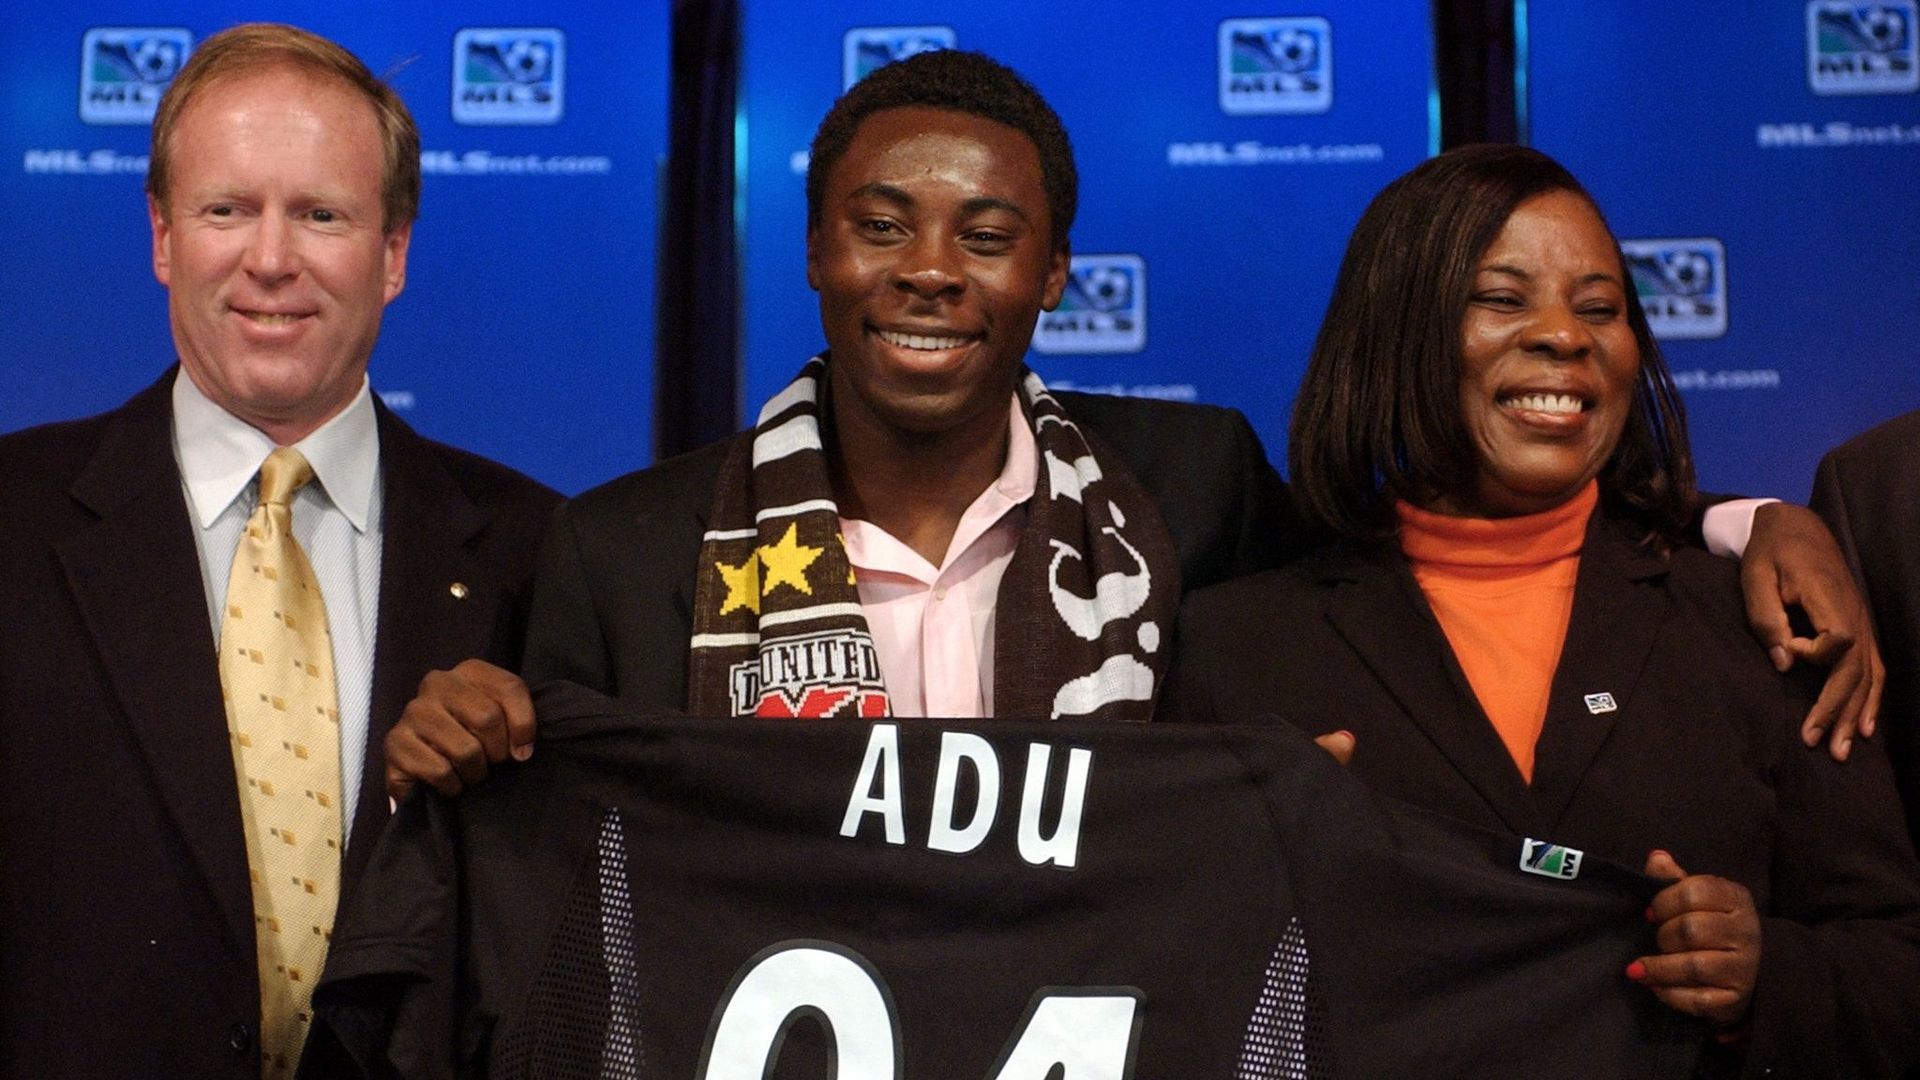 Le jeune Freddy Adu signe un contrat professionnel à 14 ans en MLS.